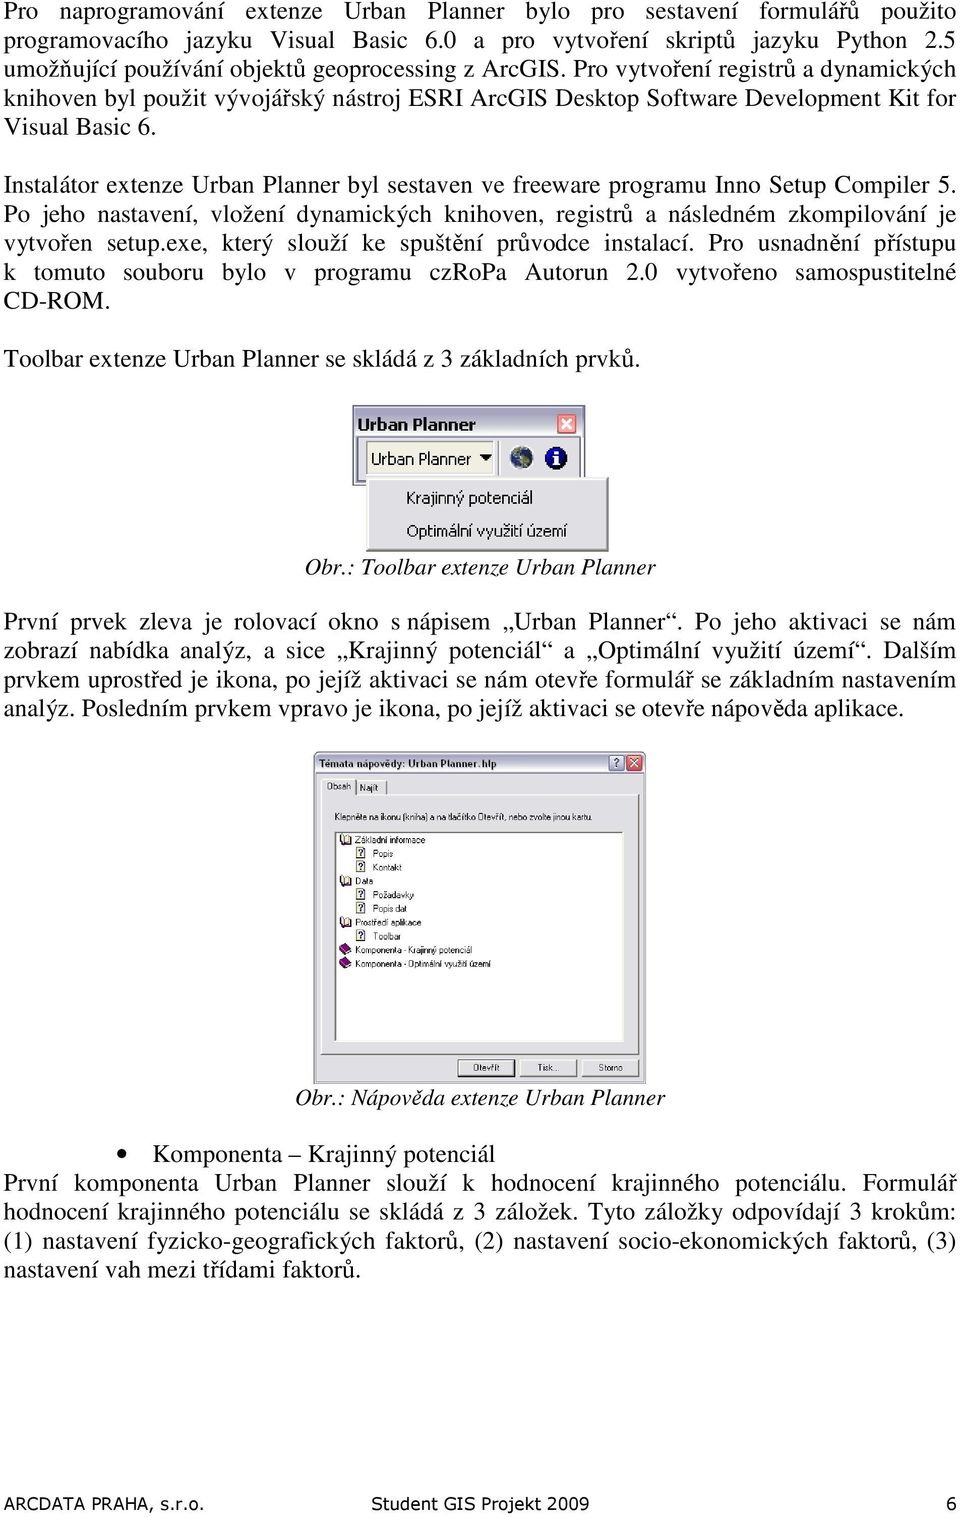 Instalátor extenze Urban Planner byl sestaven ve freeware programu Inno Setup Compiler 5. Po jeho nastavení, vložení dynamických knihoven, registrů a následném zkompilování je vytvořen setup.